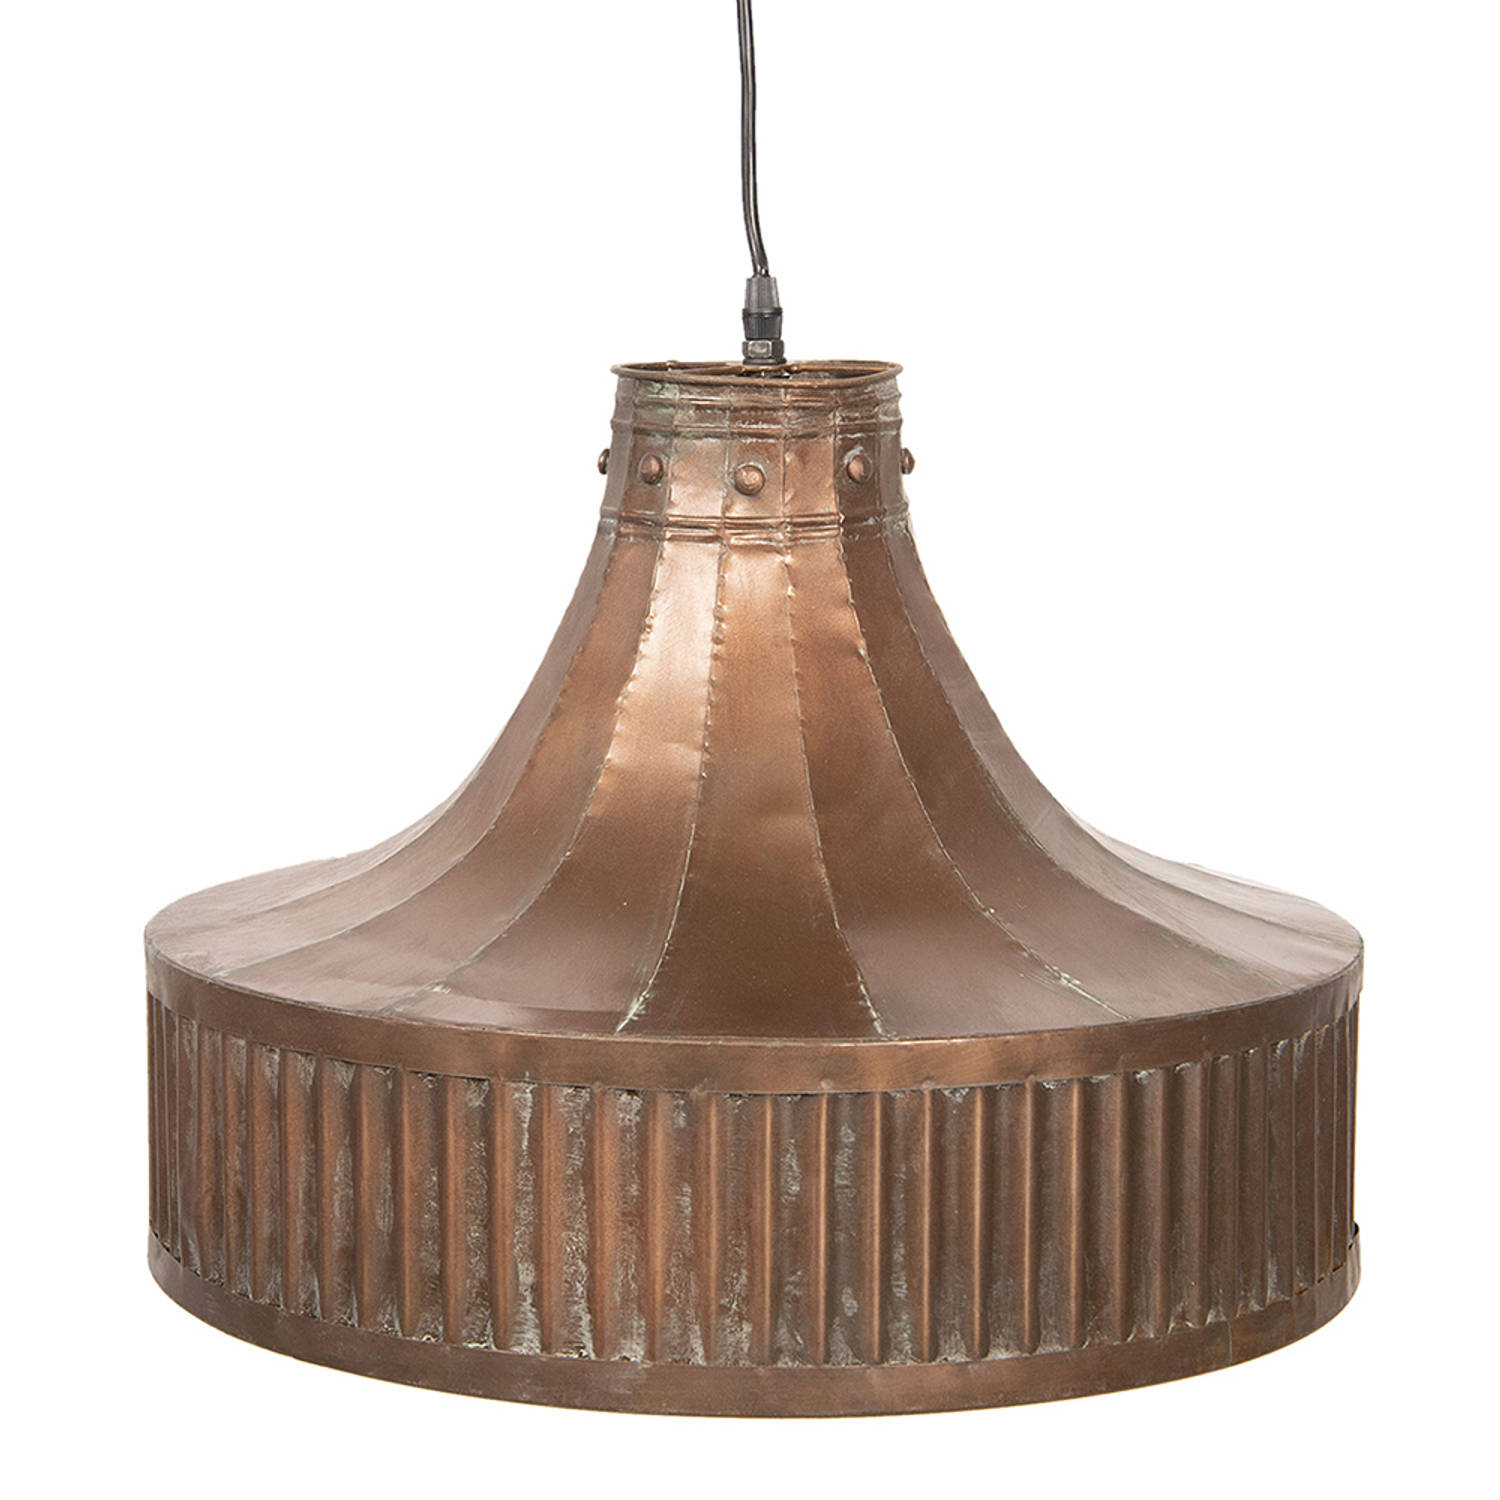 HAES DECO - Hanglamp - Industrial - Robuuste Lamp, fromaat 44x44x42 cm - Koperkleurig Metaal - Ronde Hanglamp Eettafel, Hanglamp Eetkamer